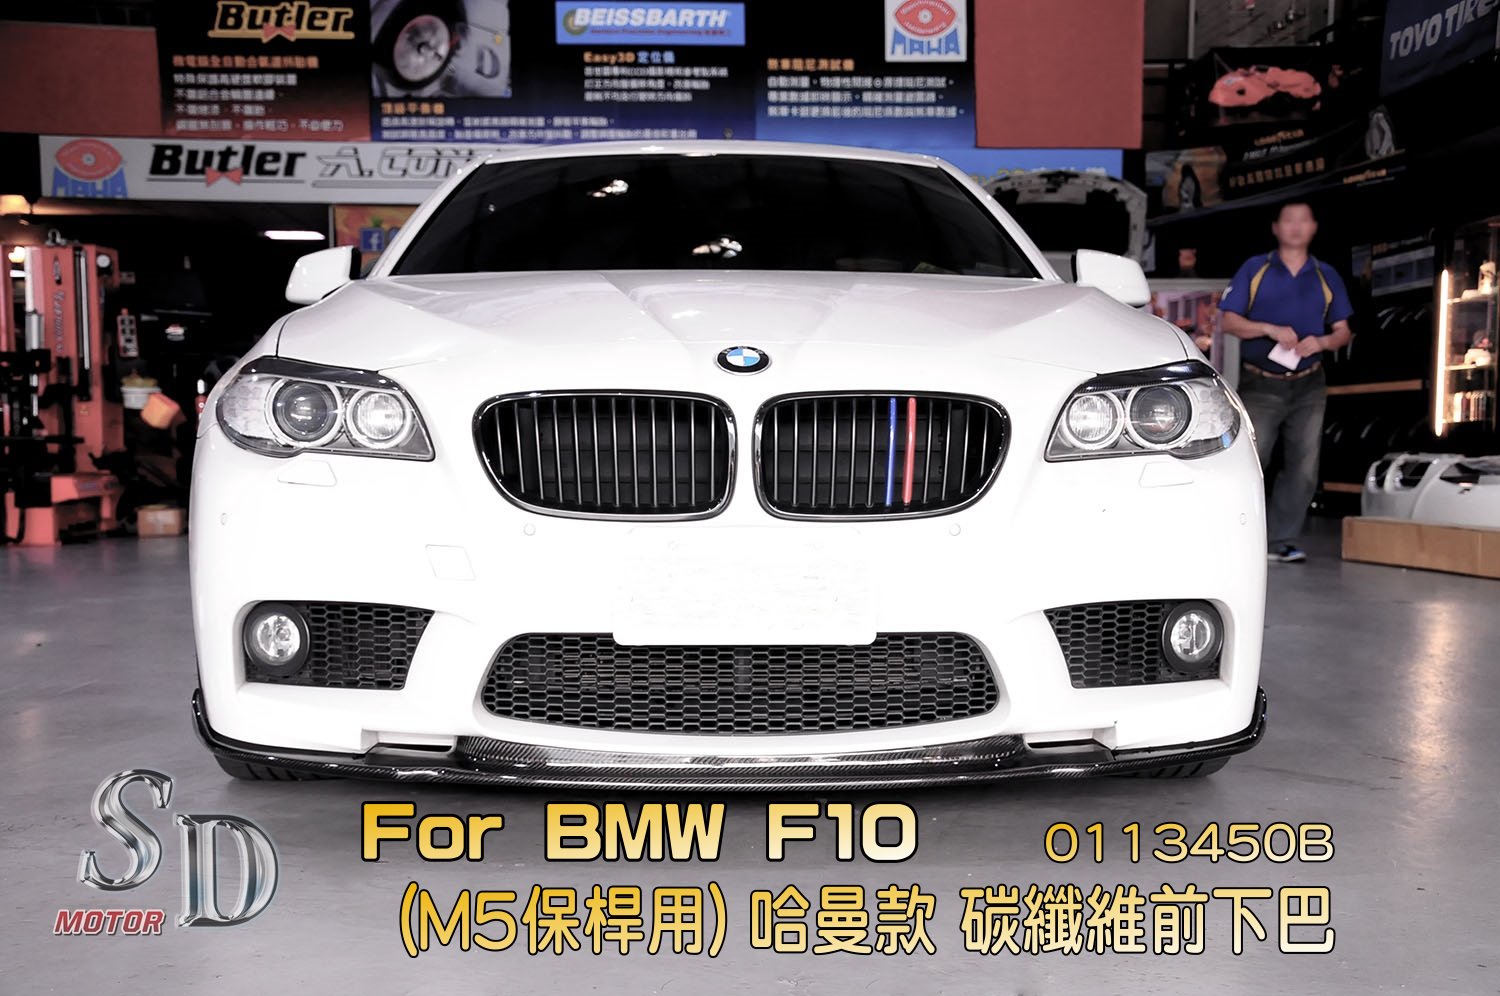 For BMW F10/F11/F18 (M5保桿用) HM款 前下巴, FRP+CF